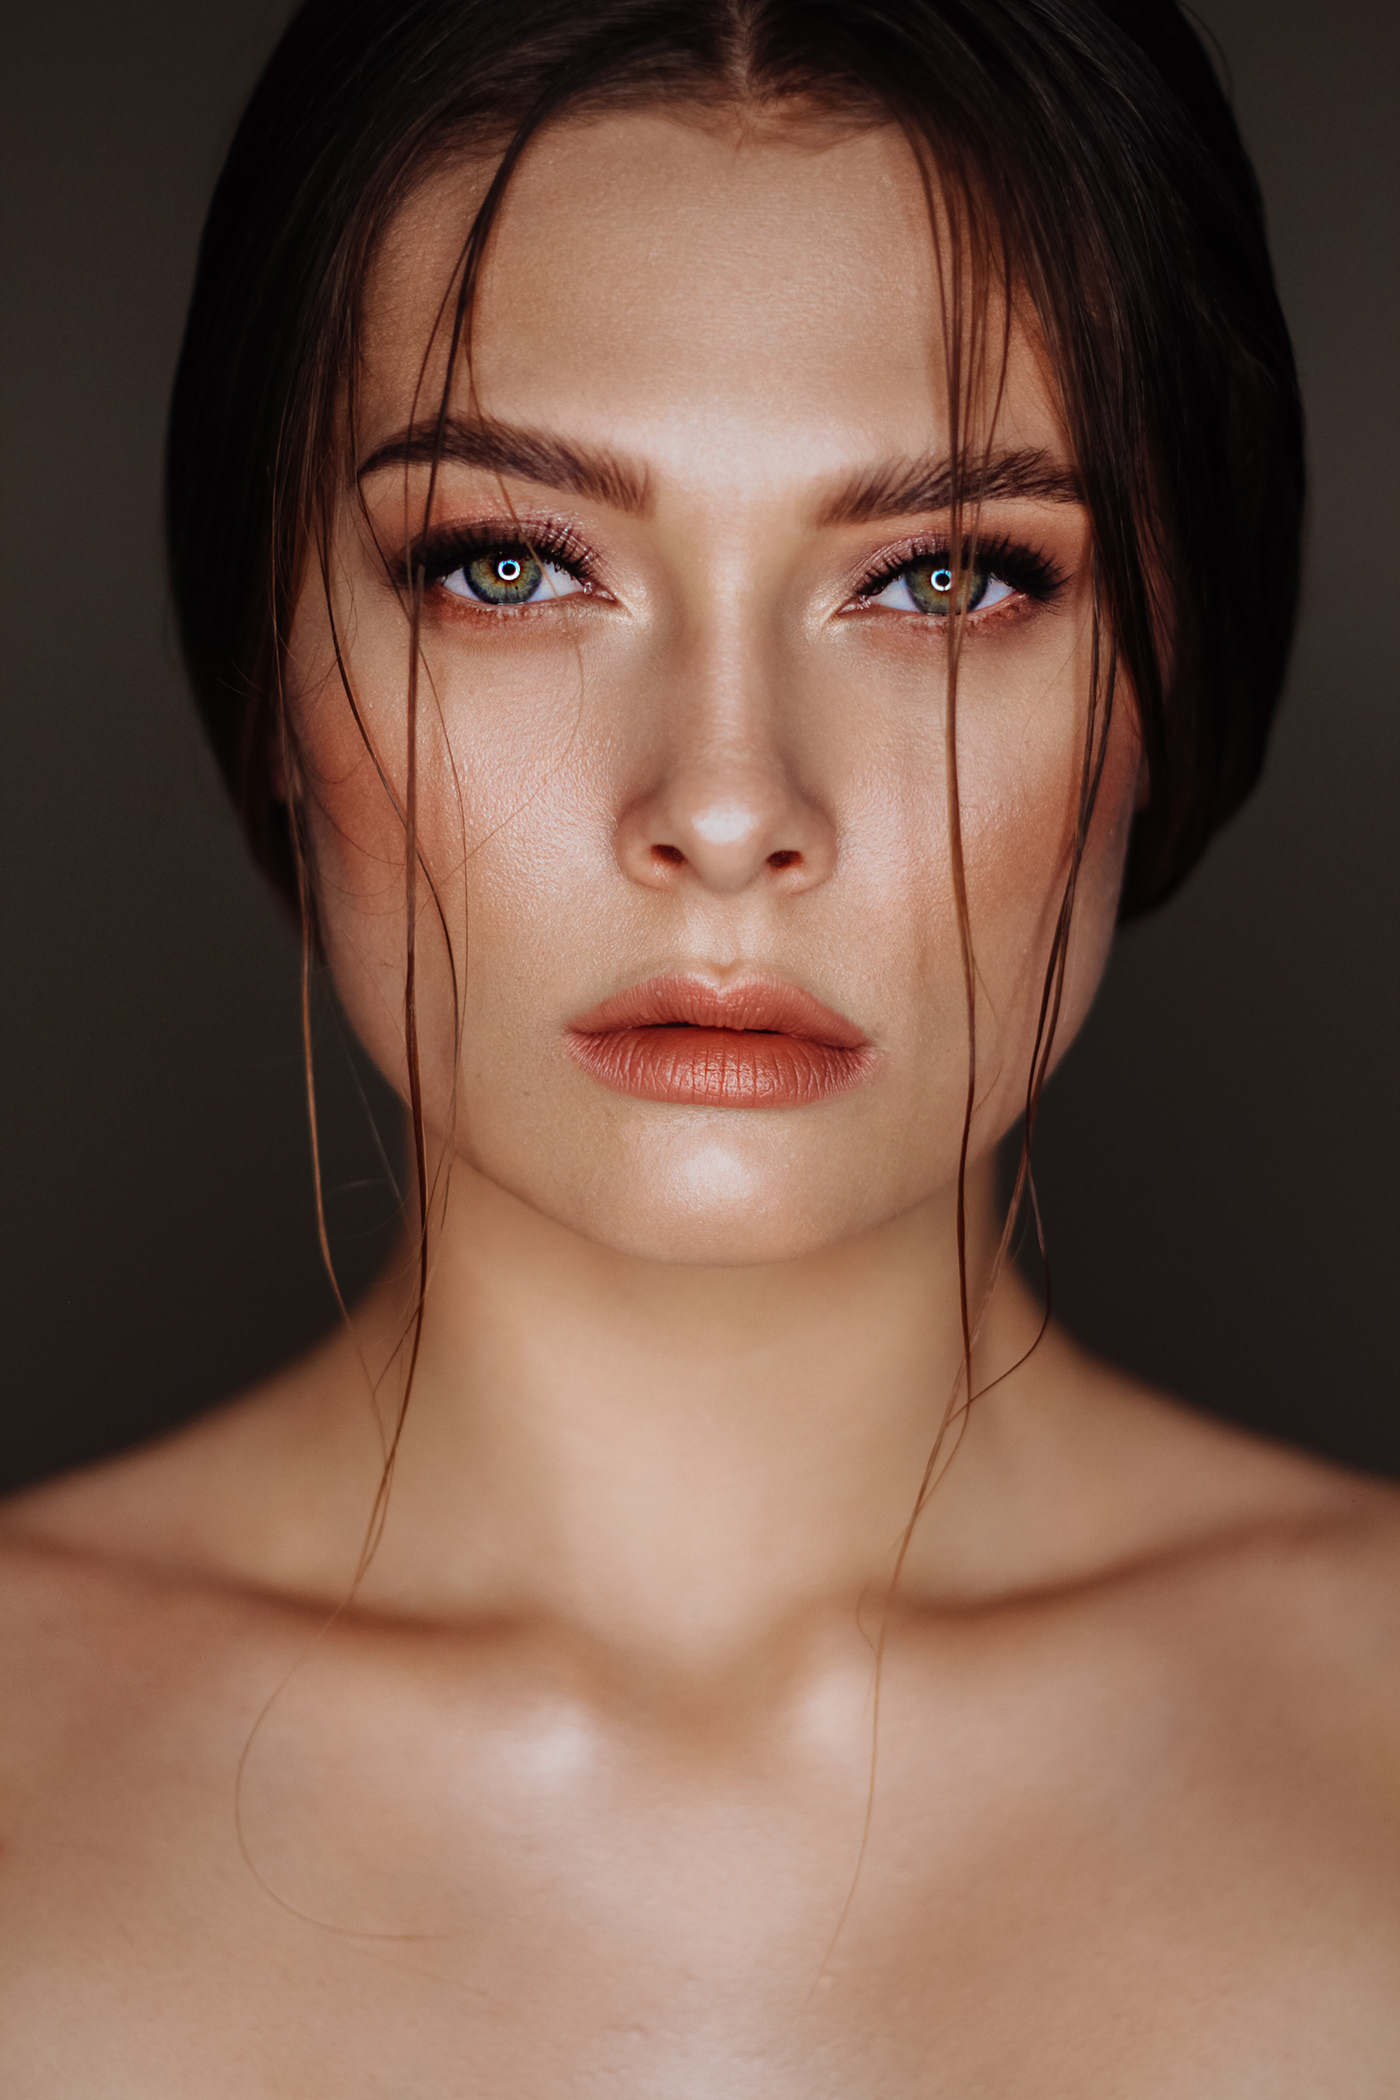 lightroom makeup model MUA photoshoot photoshop Picture portrait retouch Style